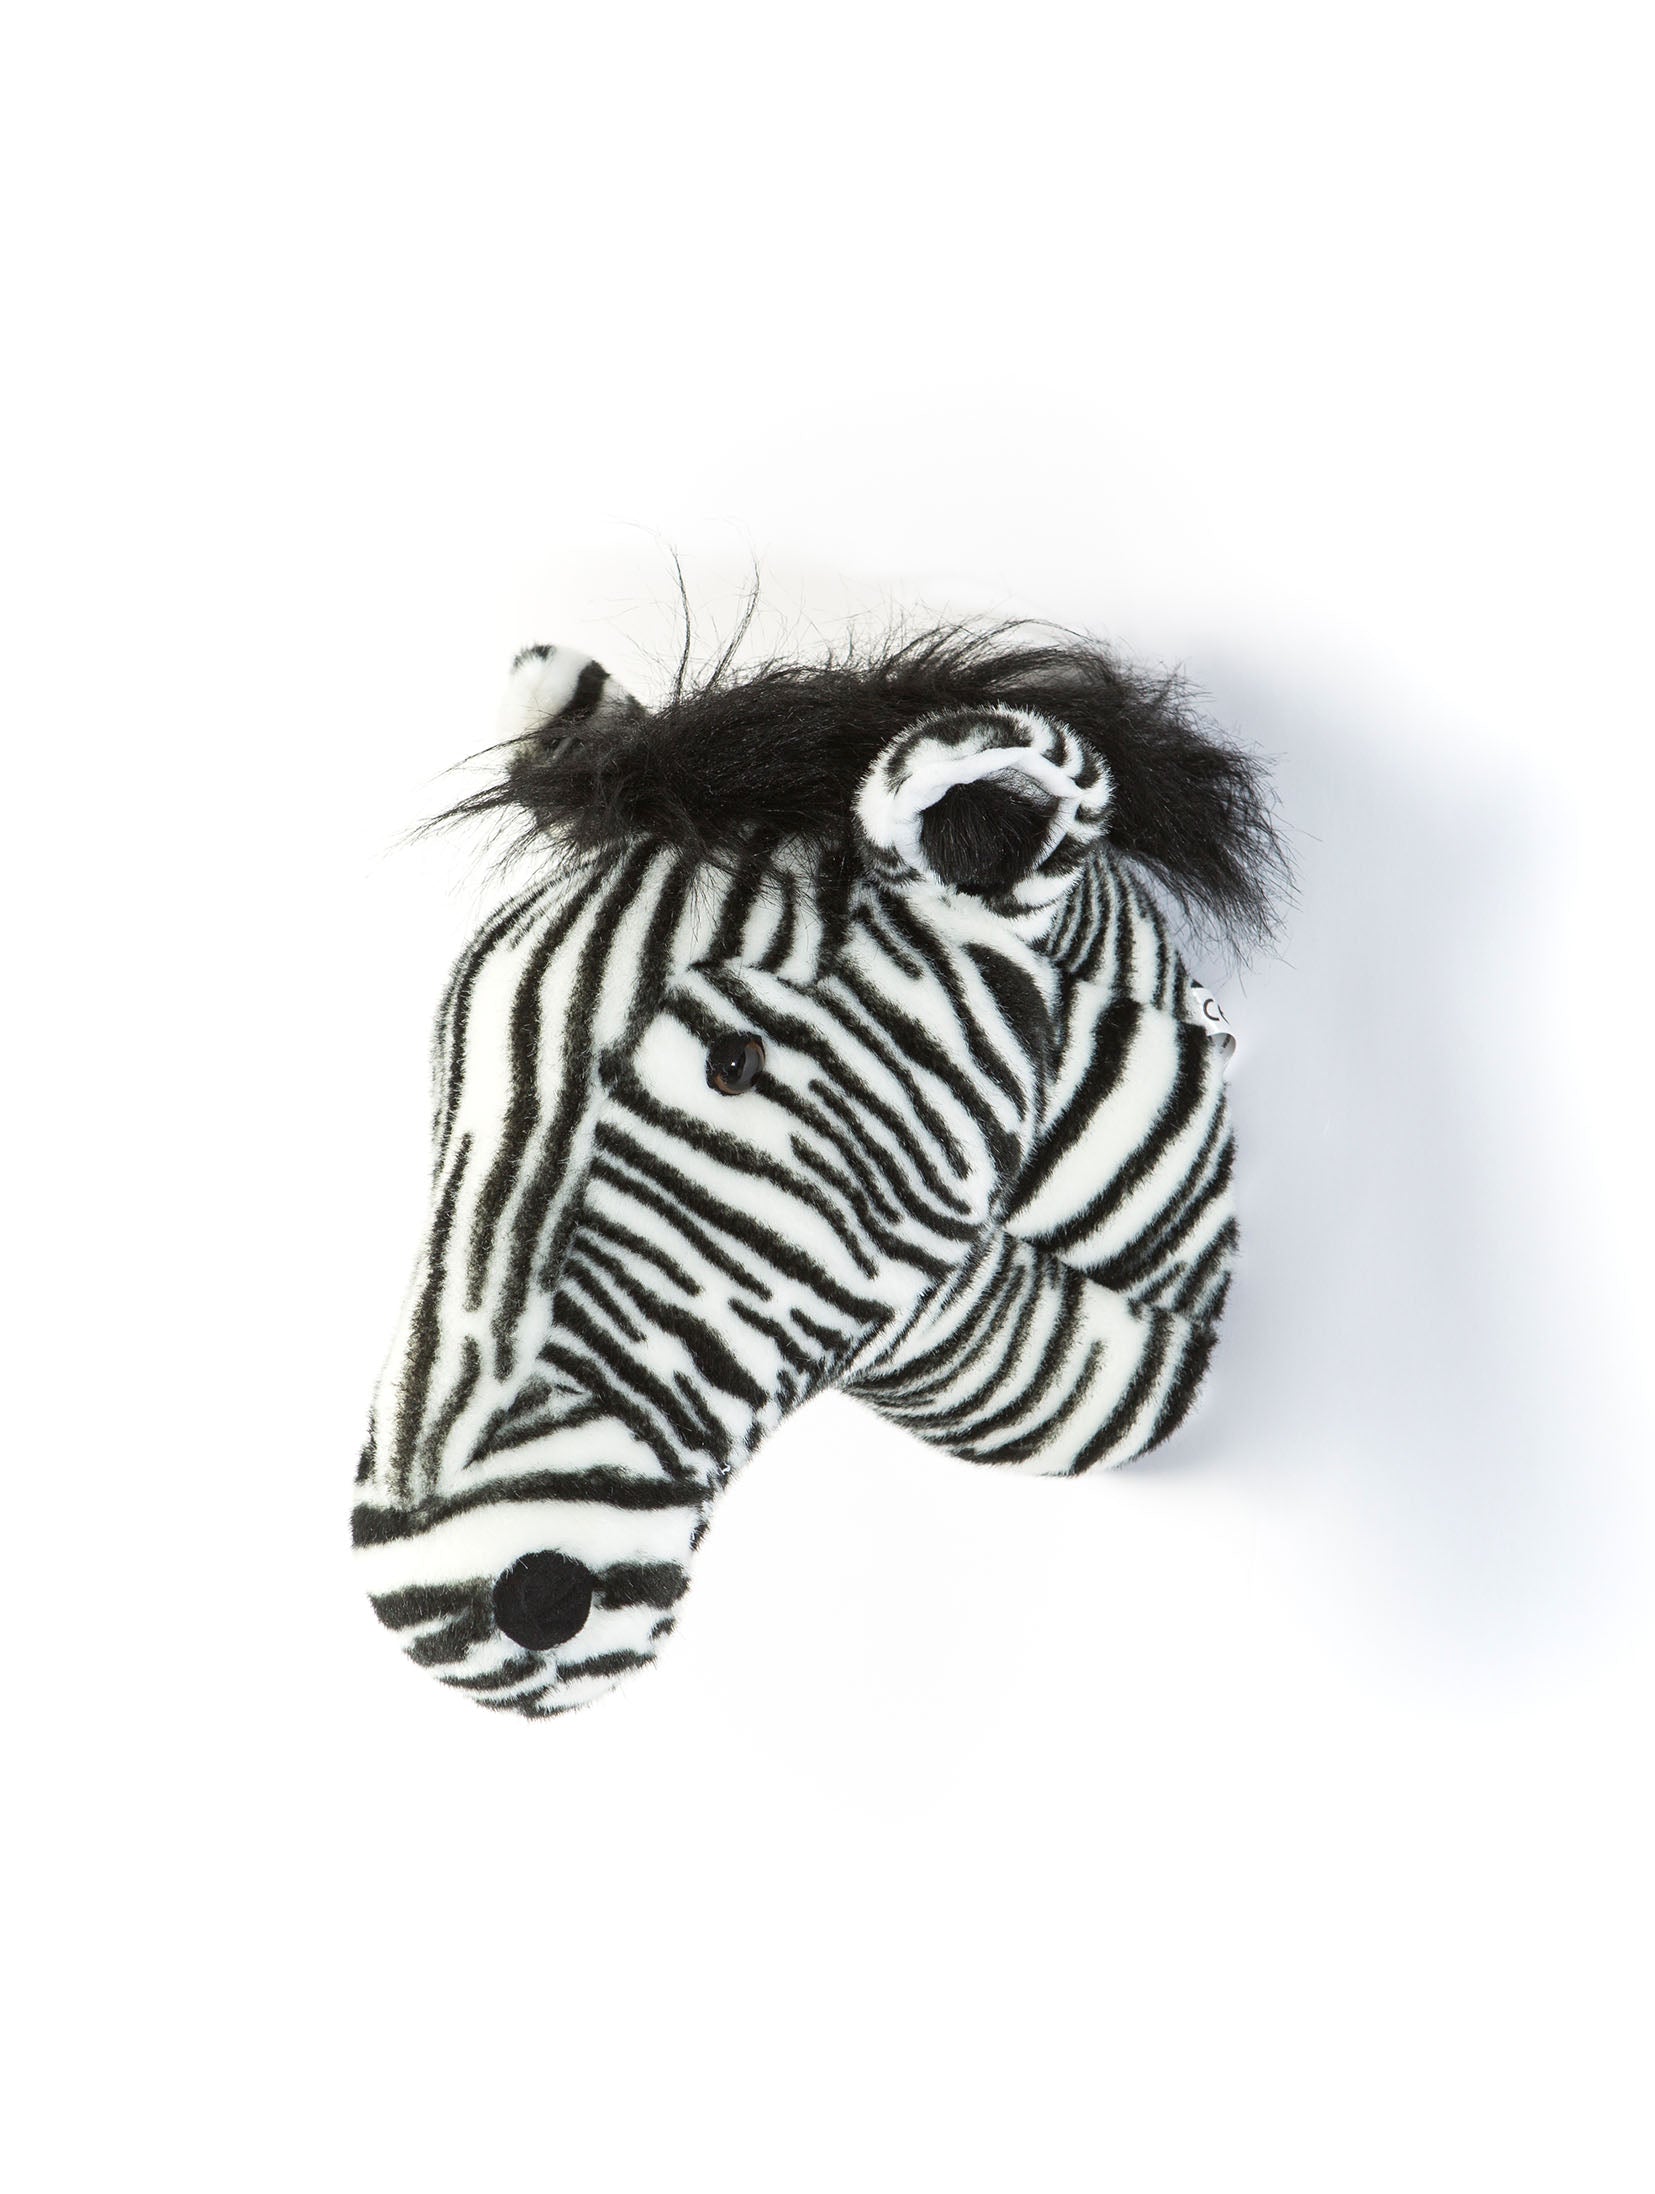 WILD&SOFT Daniel, das tapfere Zebra: Dein Begleiter in die Welt der Träume und Fantasie! 🦓💤✨